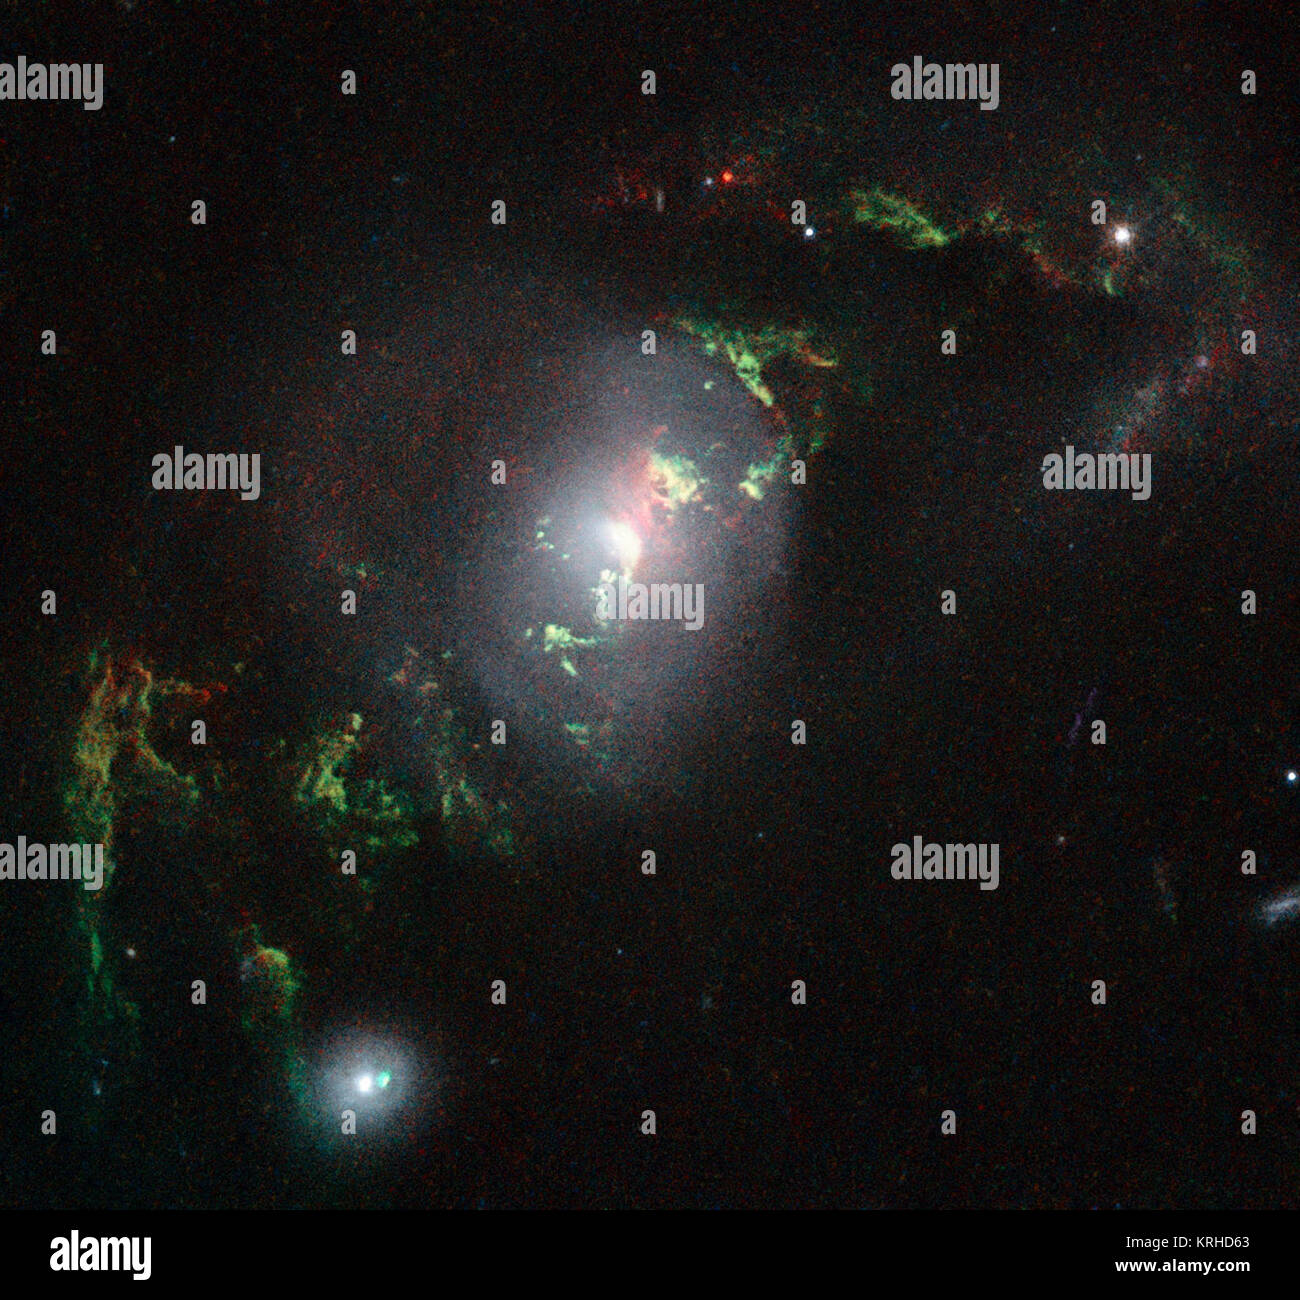 Diese neue NASA/ESA Hubble Space Telescope Bild zeigt Geisterhafte grüne Filamente, liegen innerhalb der Galaxie UGC 7342. Dieser Faden wurde durch einen Knall der Strahlung von einem Quasar beleuchtet - eine sehr helle und kompakte Region, dass das supermassive Schwarze Loch im Zentrum seiner Heimatgalaxie umgibt. Die hellen grünen Farbton ist ein Resultat von ionisiertem Sauerstoff, der Hell in grünen Wellenlängen leuchtet. Heic 1507 e Stockfoto